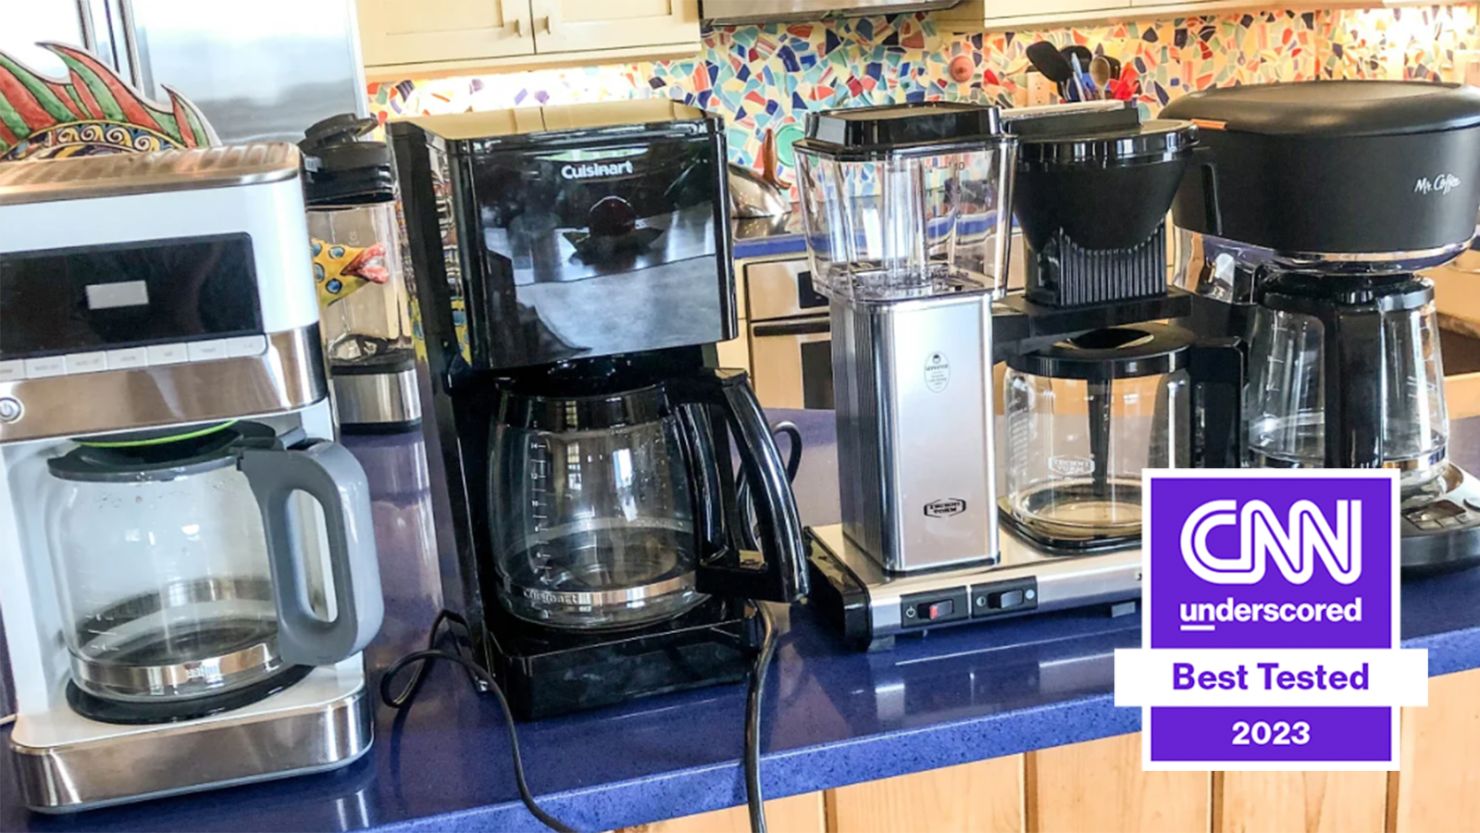 Portable Mini Drip Coffee Maker Cordless Automatic Espresso Coffee Machine